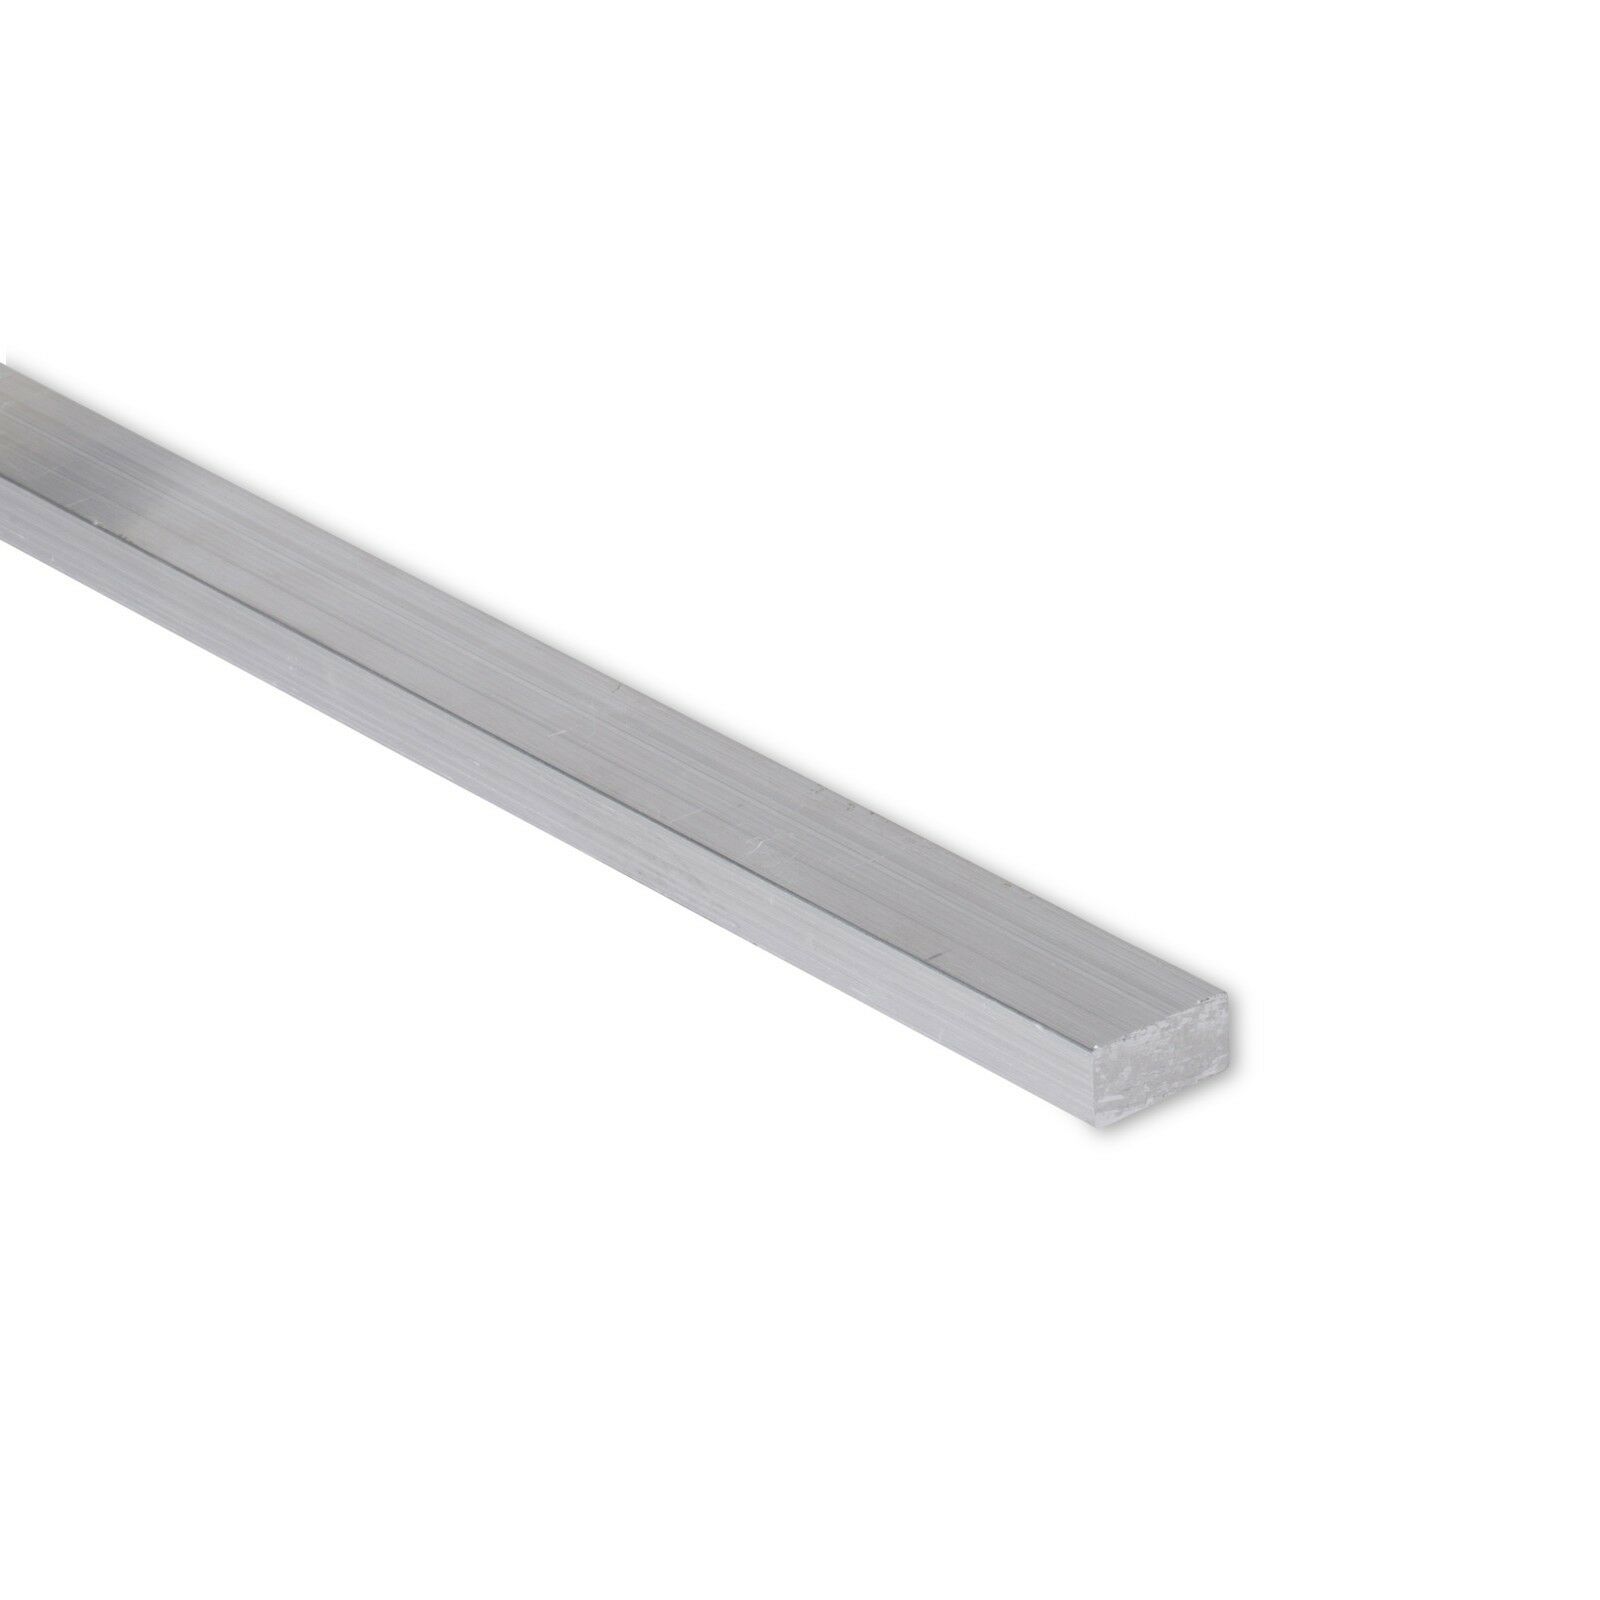 5/8" x 1-1/2" Aluminum Flat Bar T6511 Mill Stock 6061 Plate 0.625 4" Length 